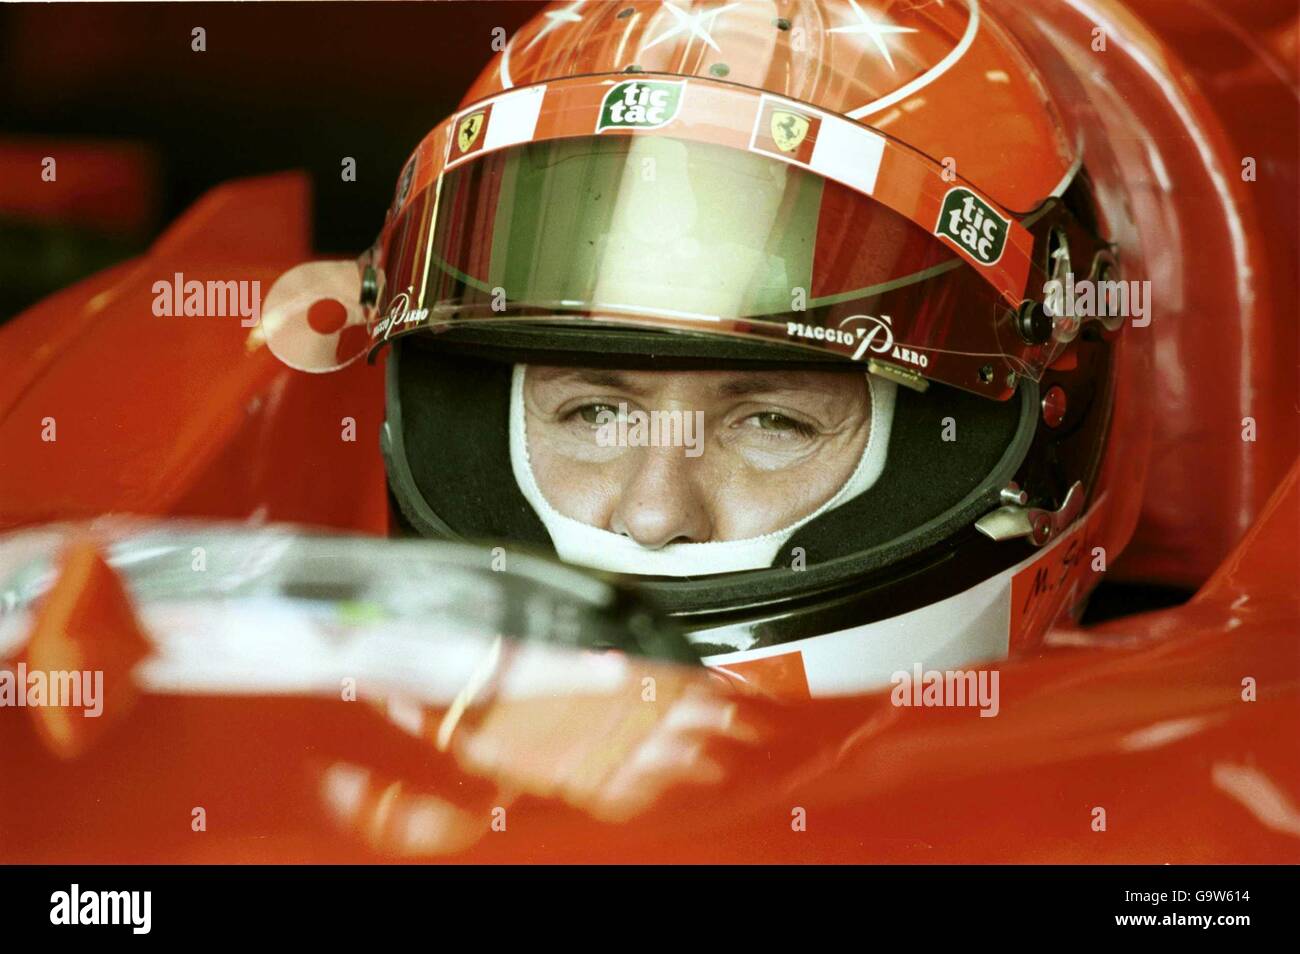 Michael Schumacher de Ferrari étudie les informations techniques sur les frais généraux Surveille avant la pratique d'aujourd'hui au Grand Prix de Grande-Bretagne Banque D'Images